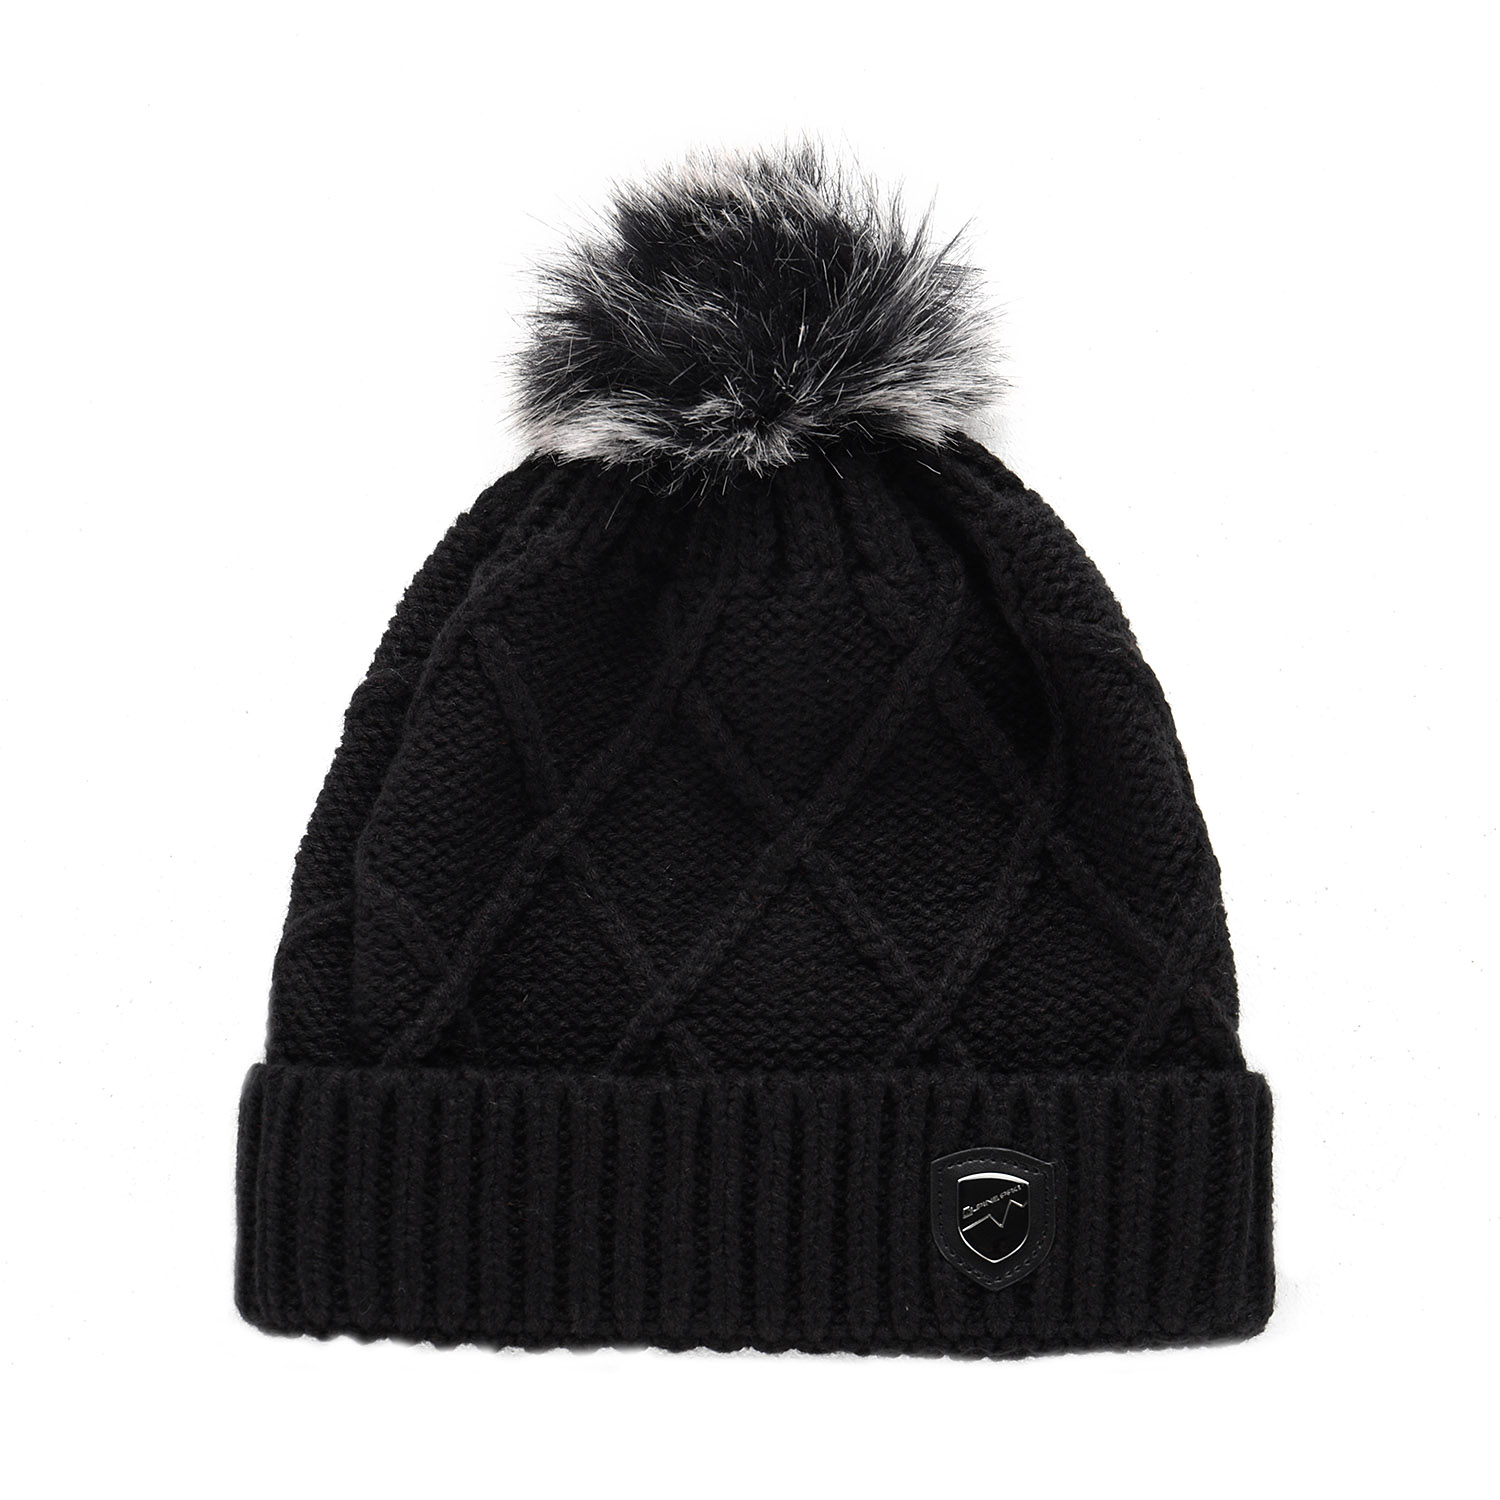 Warm hat with pompom ALPINE PRO GODERE black